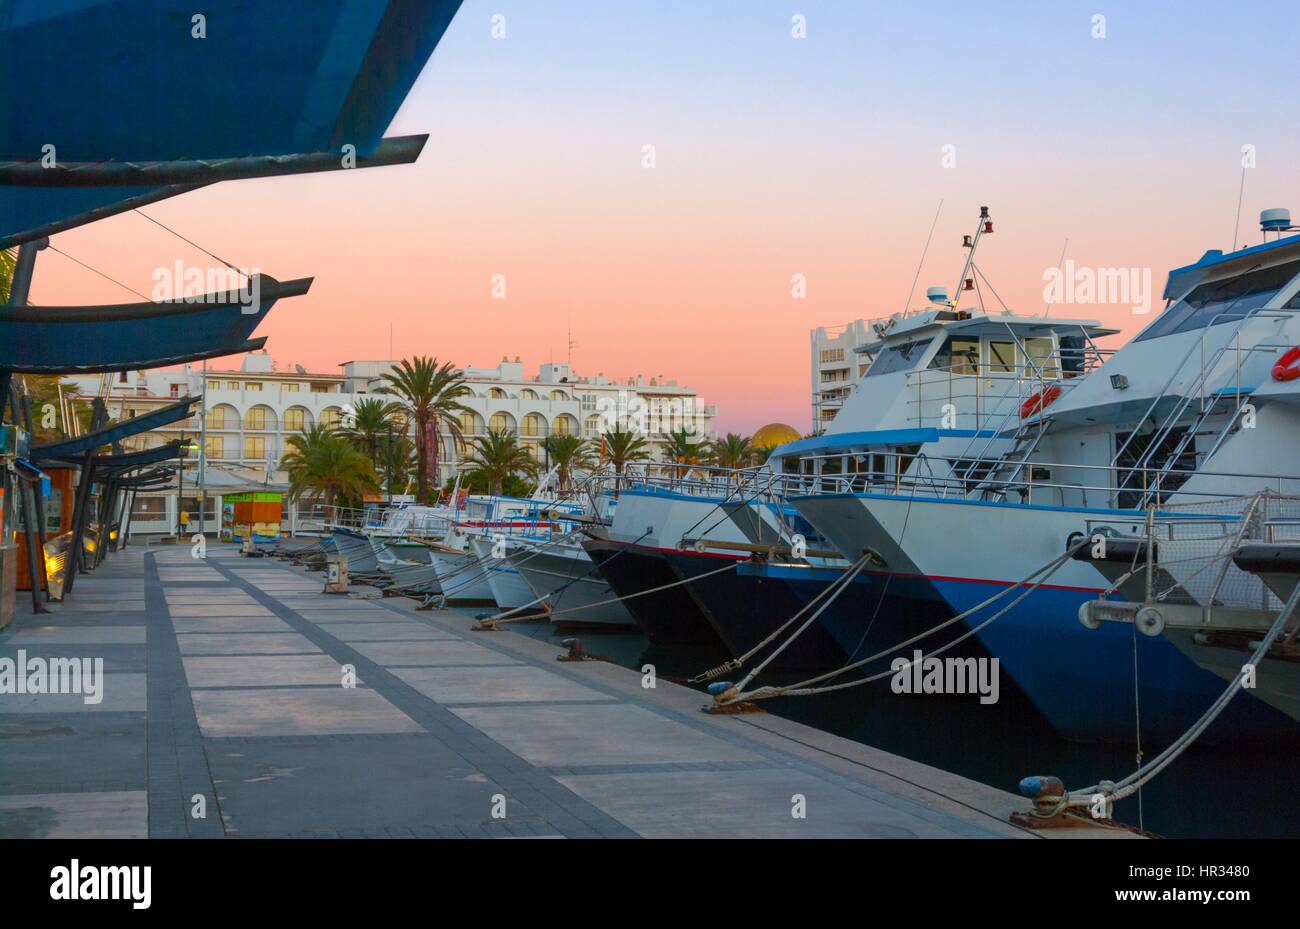 Barche in per la sera nel porto Marina sotto drammatico tramonto magenta colore . Fine di un giorno caldo e soleggiato in Ibiza, Sant Antoni de Portmany, Spagna. Foto Stock